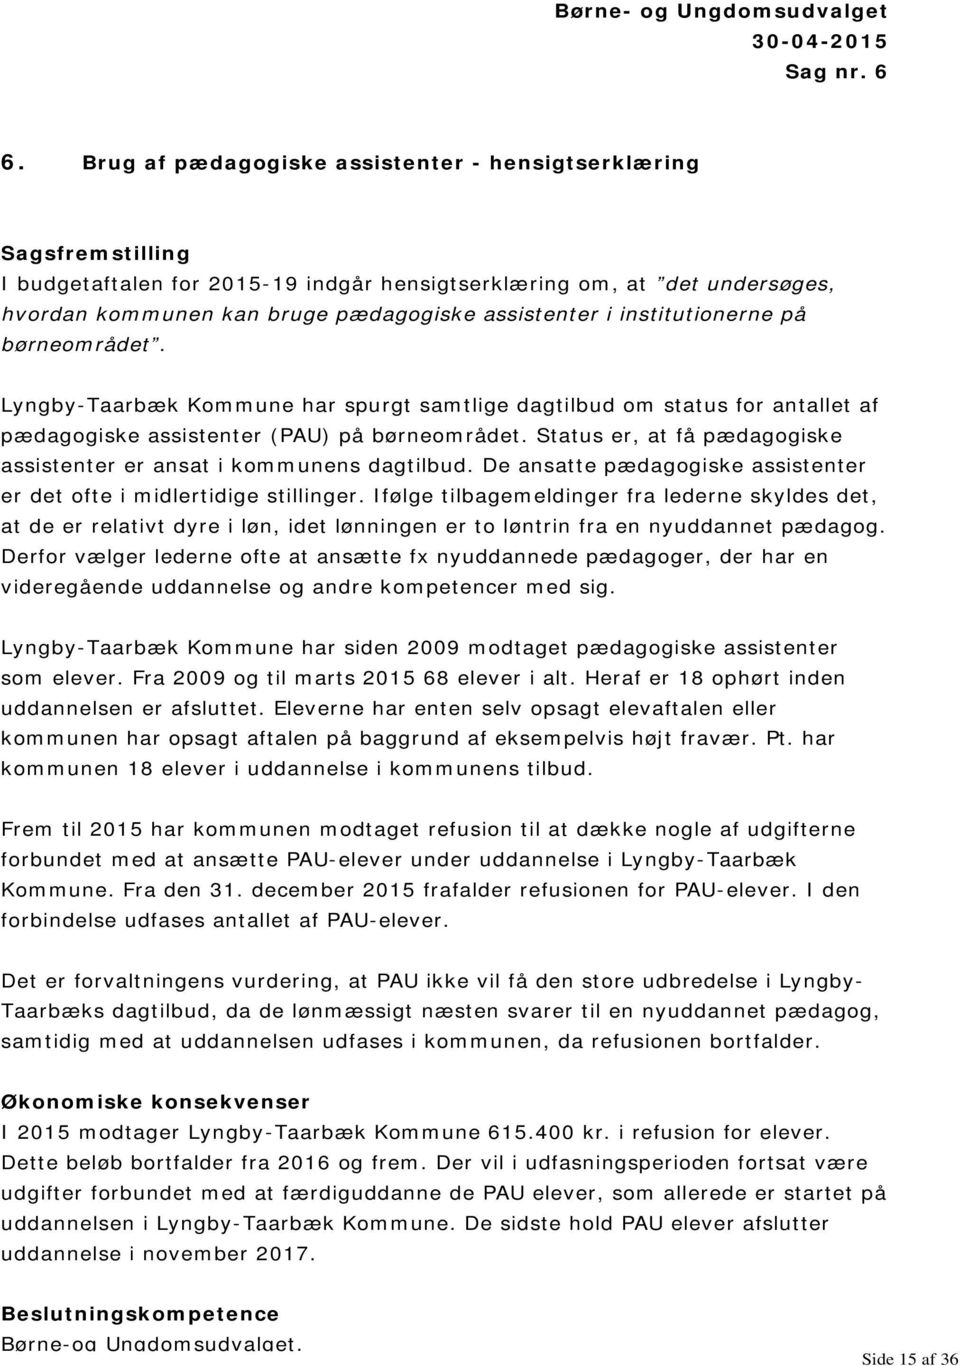 institutionerne på børneområdet. Lyngby-Taarbæk Kommune har spurgt samtlige dagtilbud om status for antallet af pædagogiske assistenter (PAU) på børneområdet.